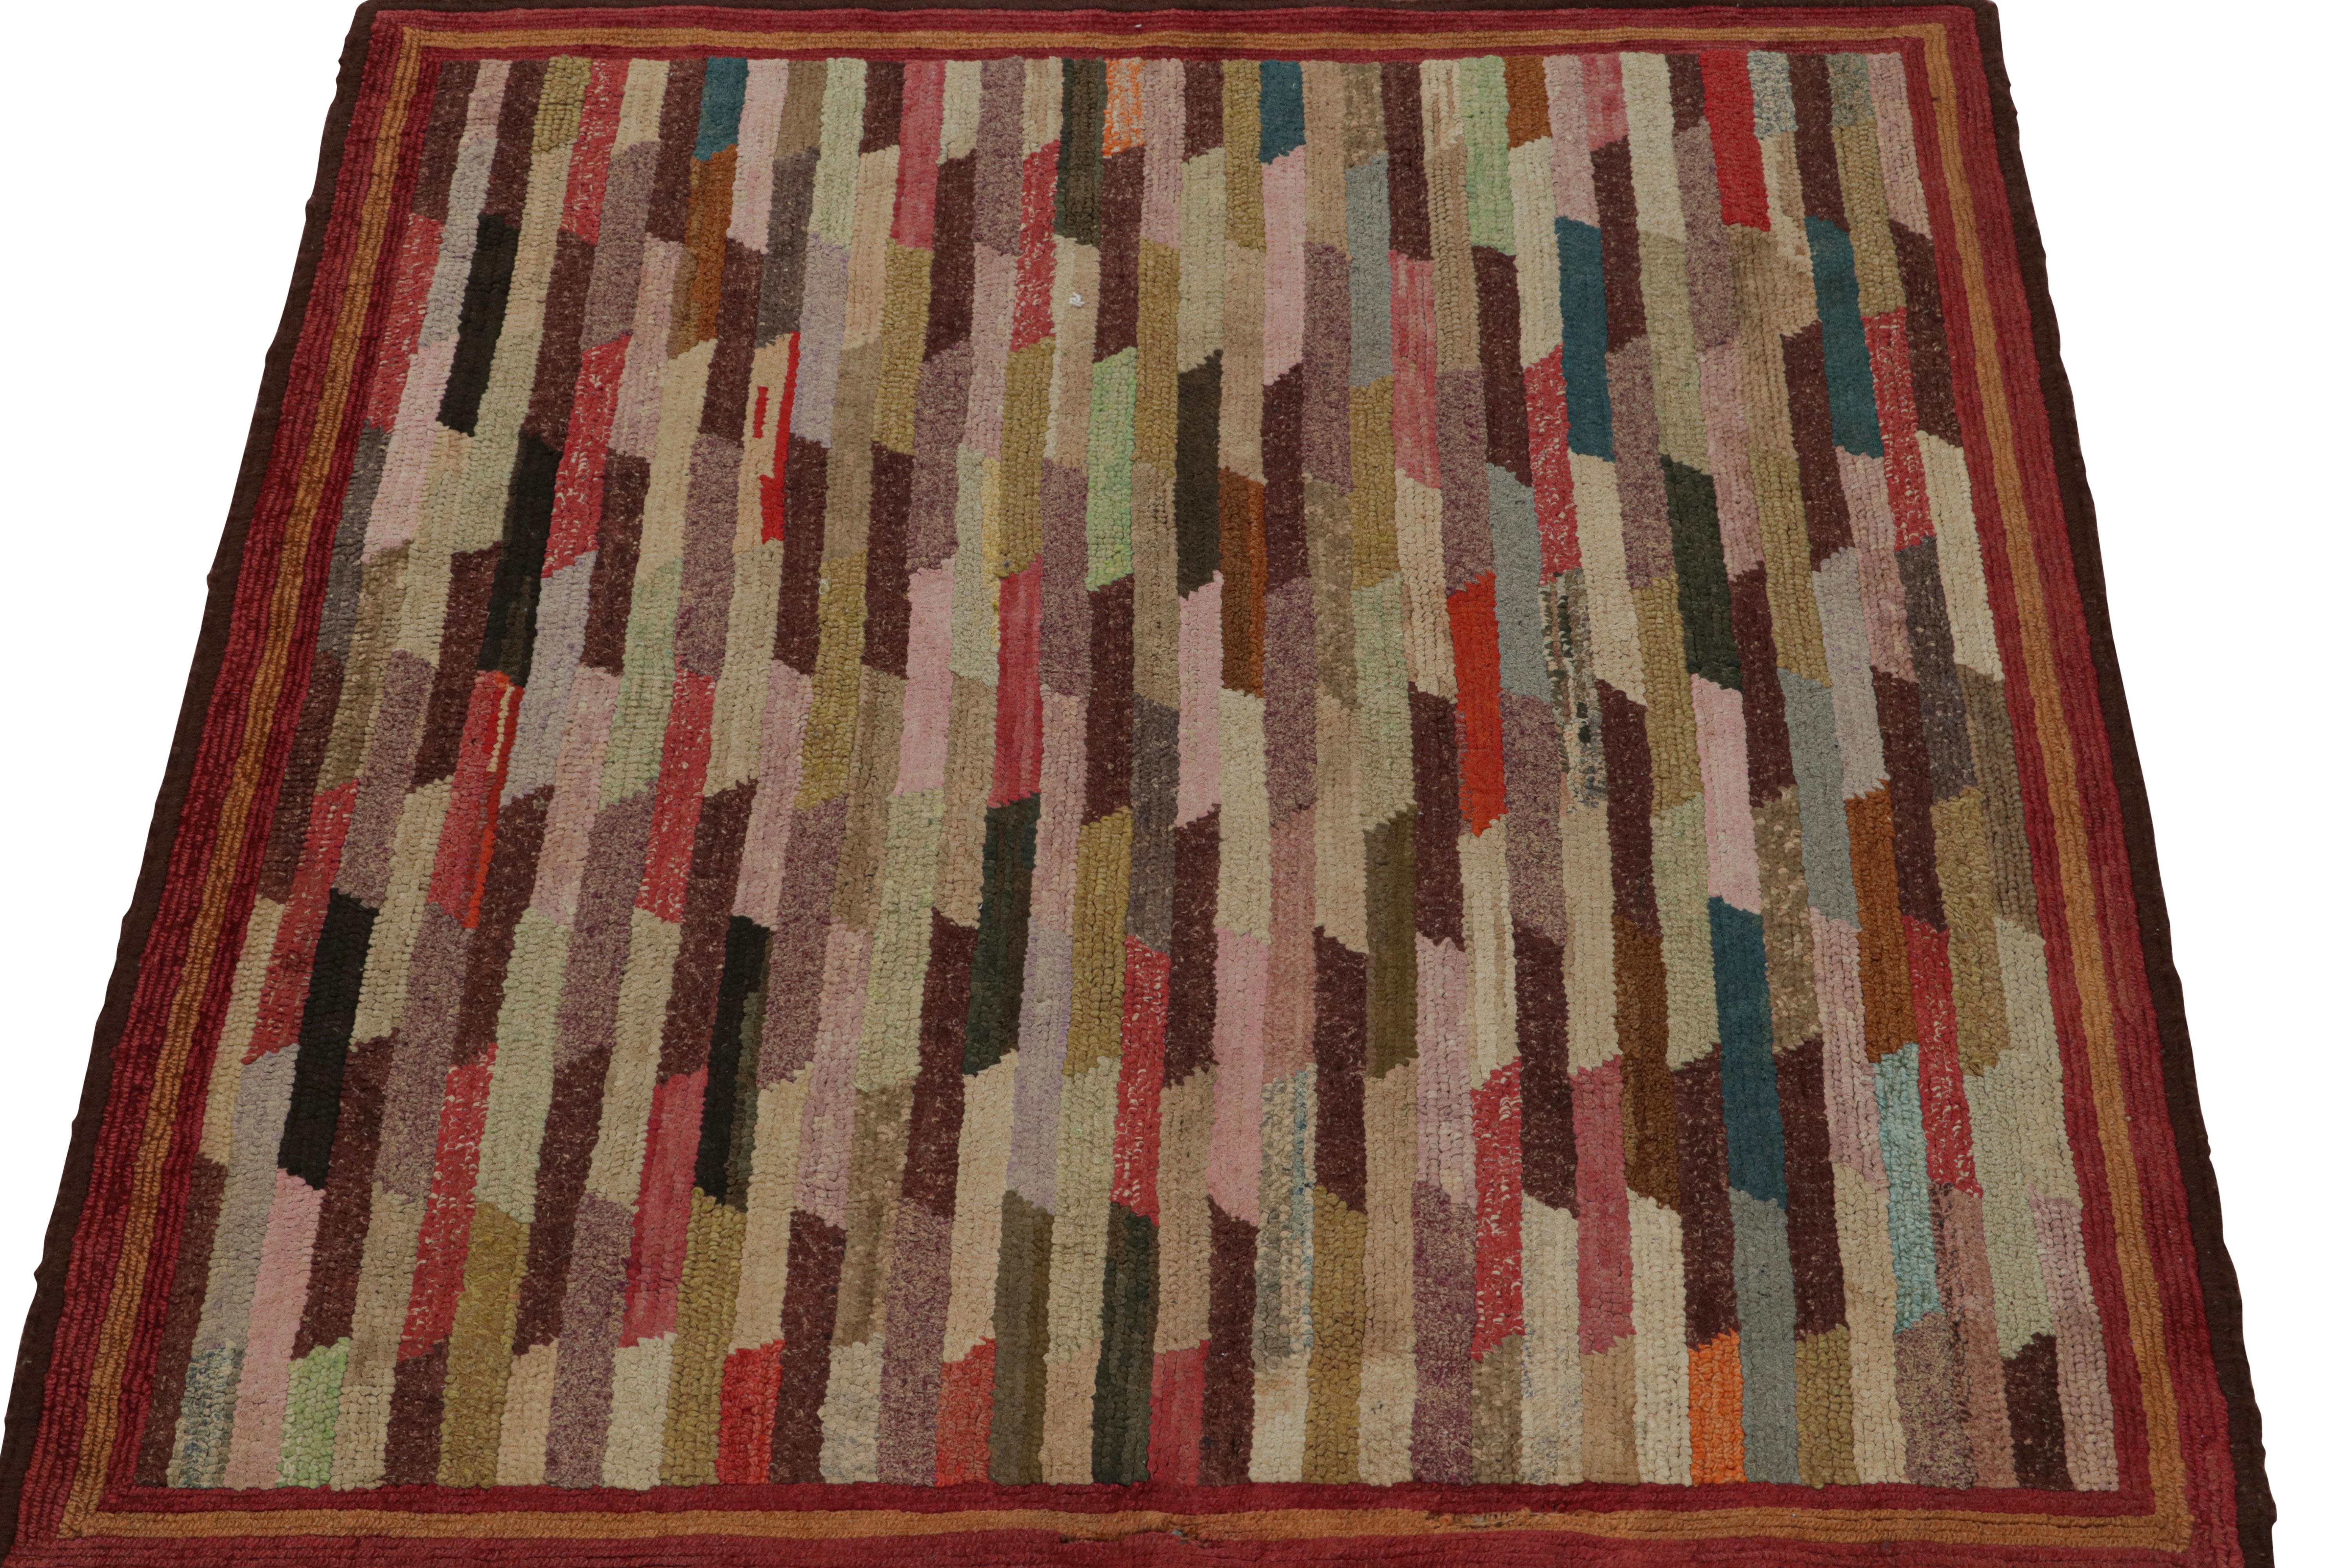 Ein seltener 3x3 antiker quadratischer Hakenteppich amerikanischer Provenienz, handgefertigt aus Wolle und Stoff um 1920-1930, mit polychromen geometrischen Mustern. 

Über das Design: 

Dieses Sammlerstück erfreut sich an geometrischen Mustern in